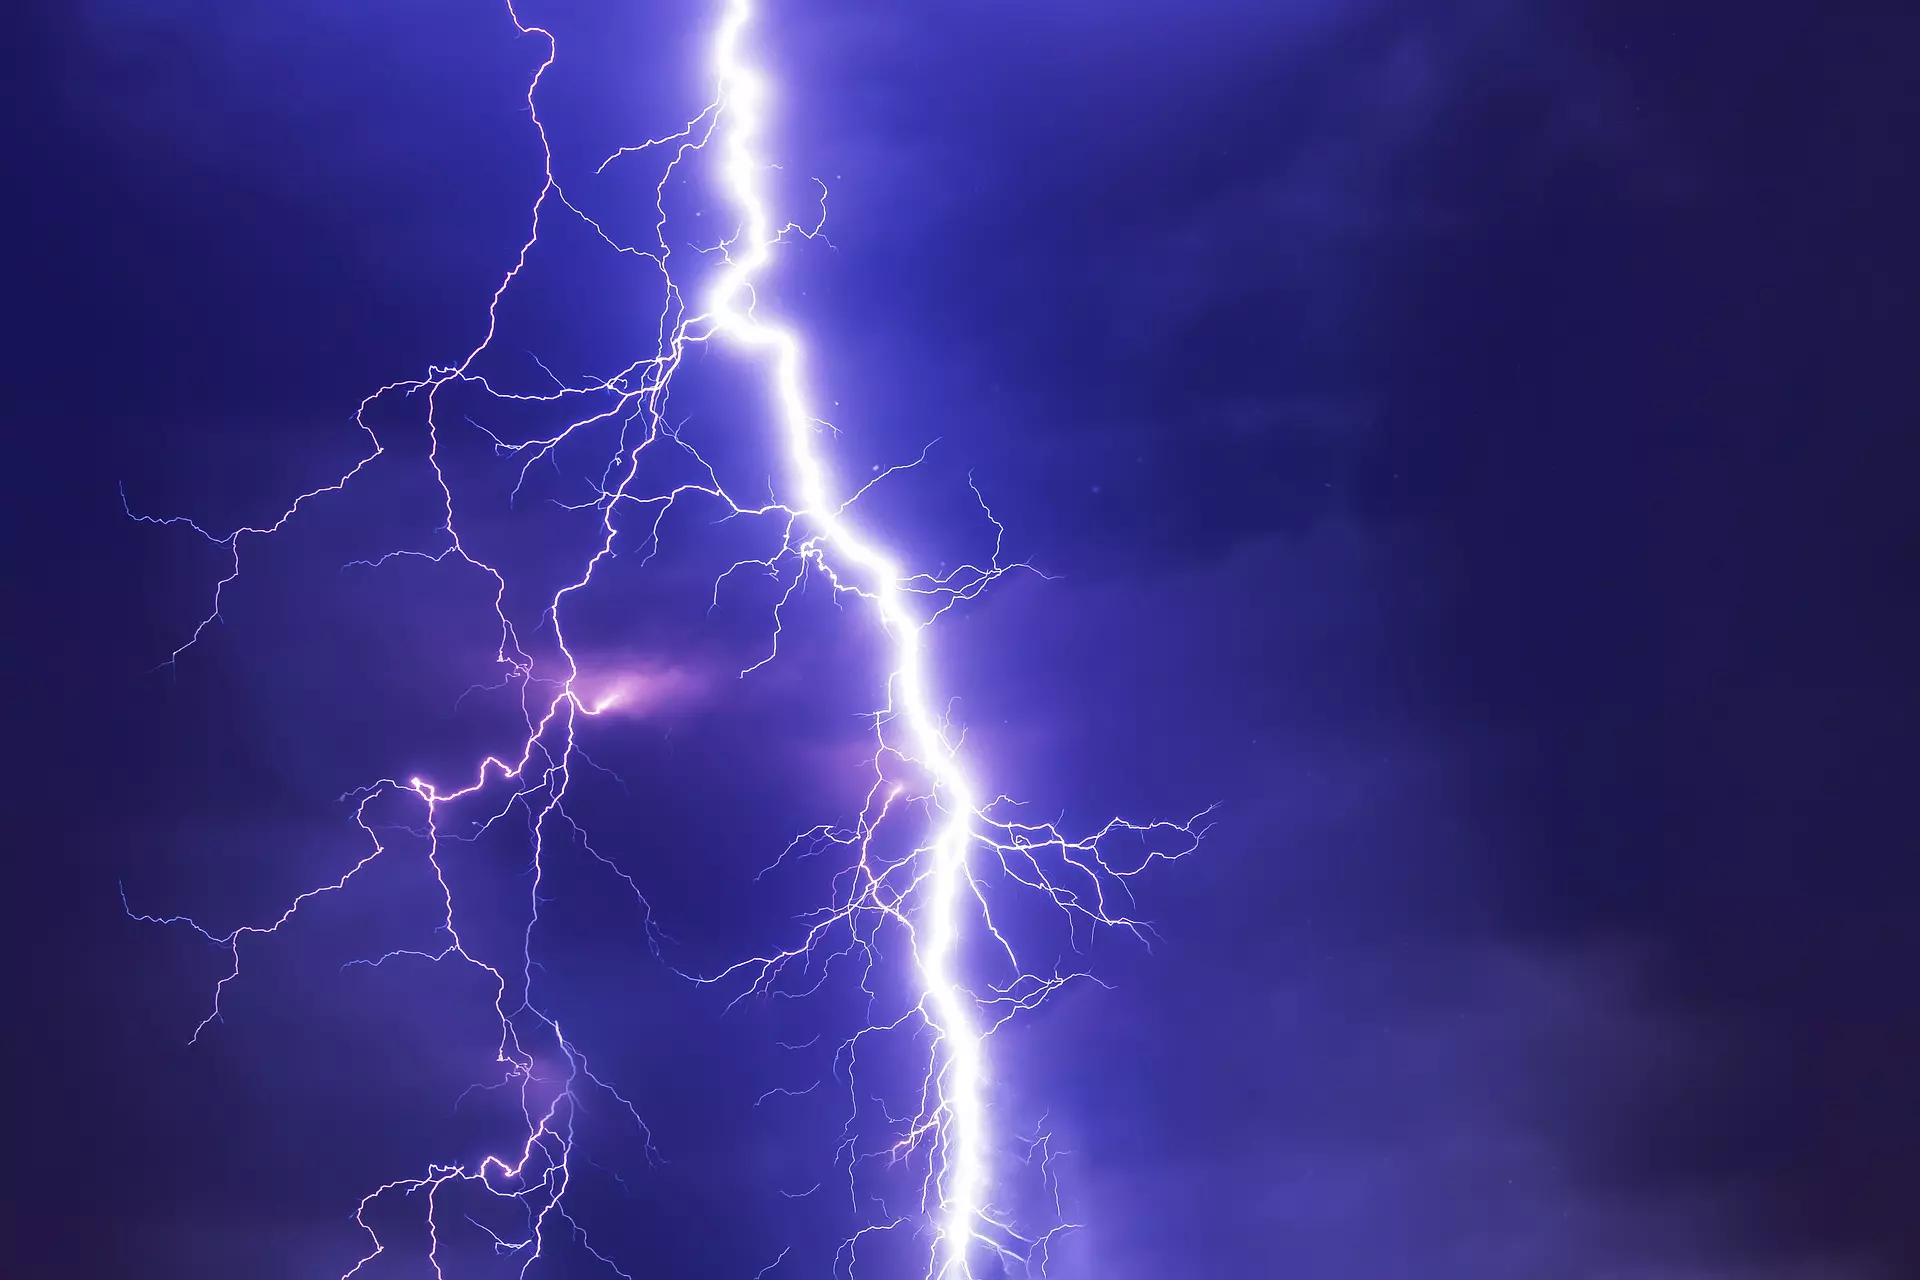 Bild zeigt einen spektakulären Blitz